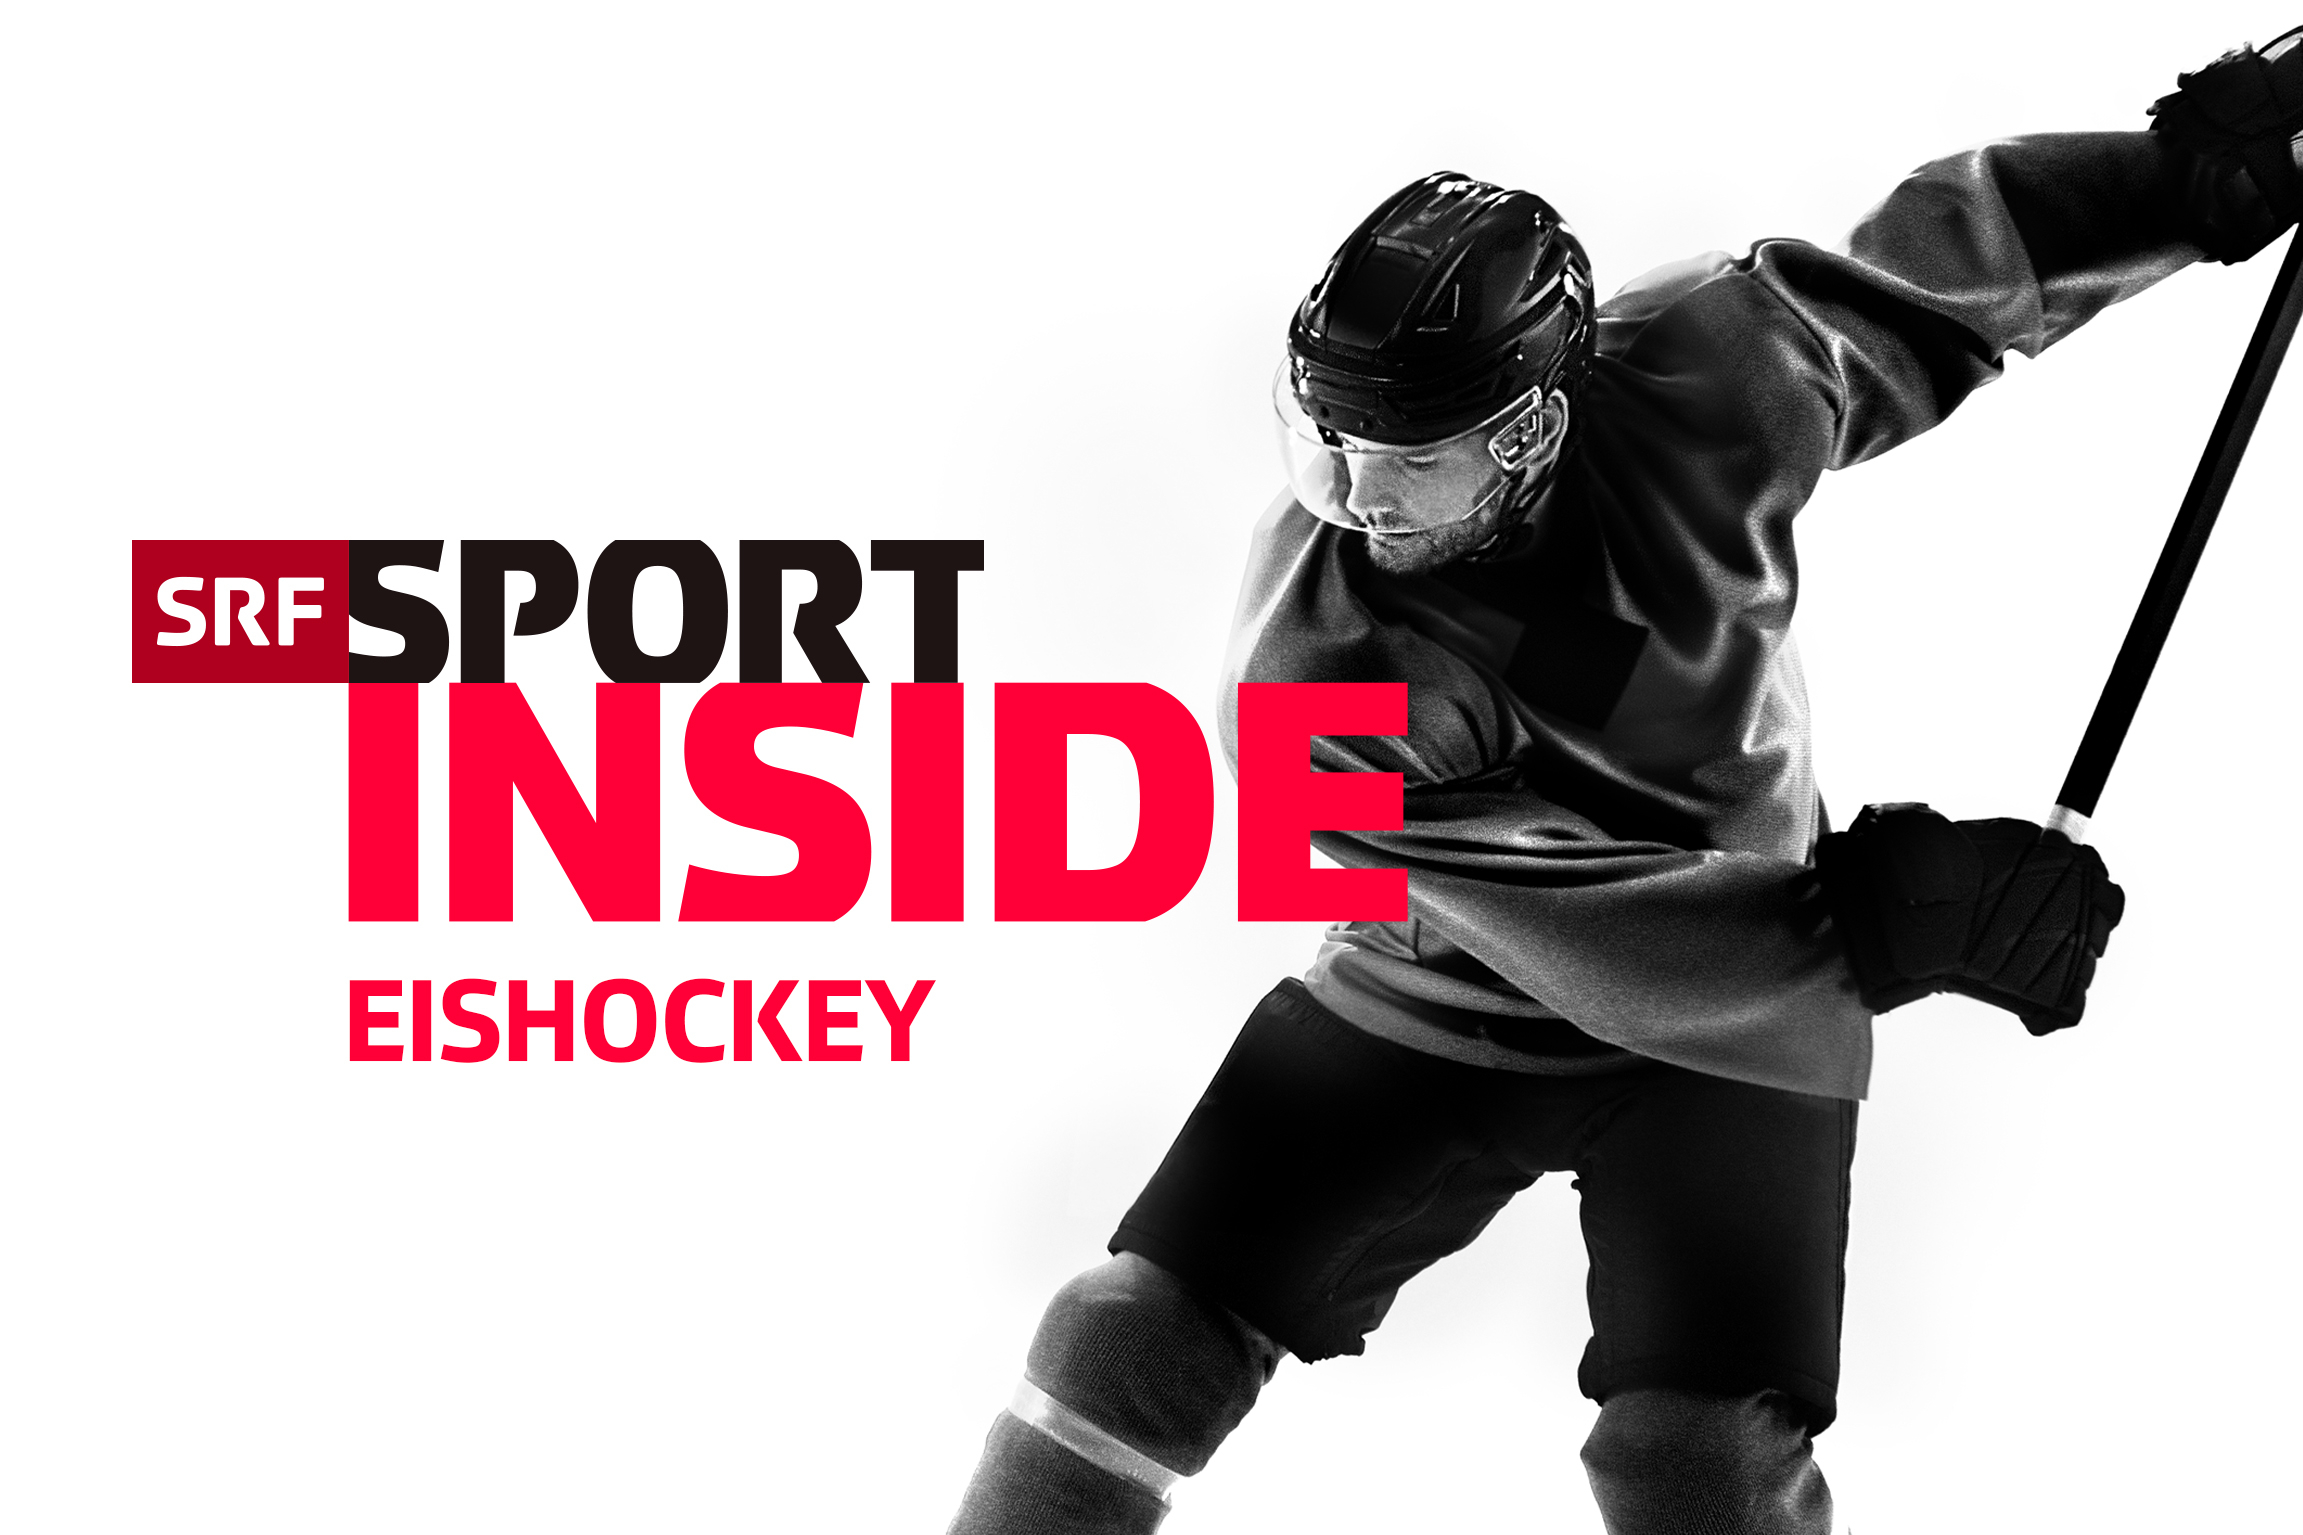 SRF Sport Eishockey – InsideKeyvisual2022Copyright: SRF